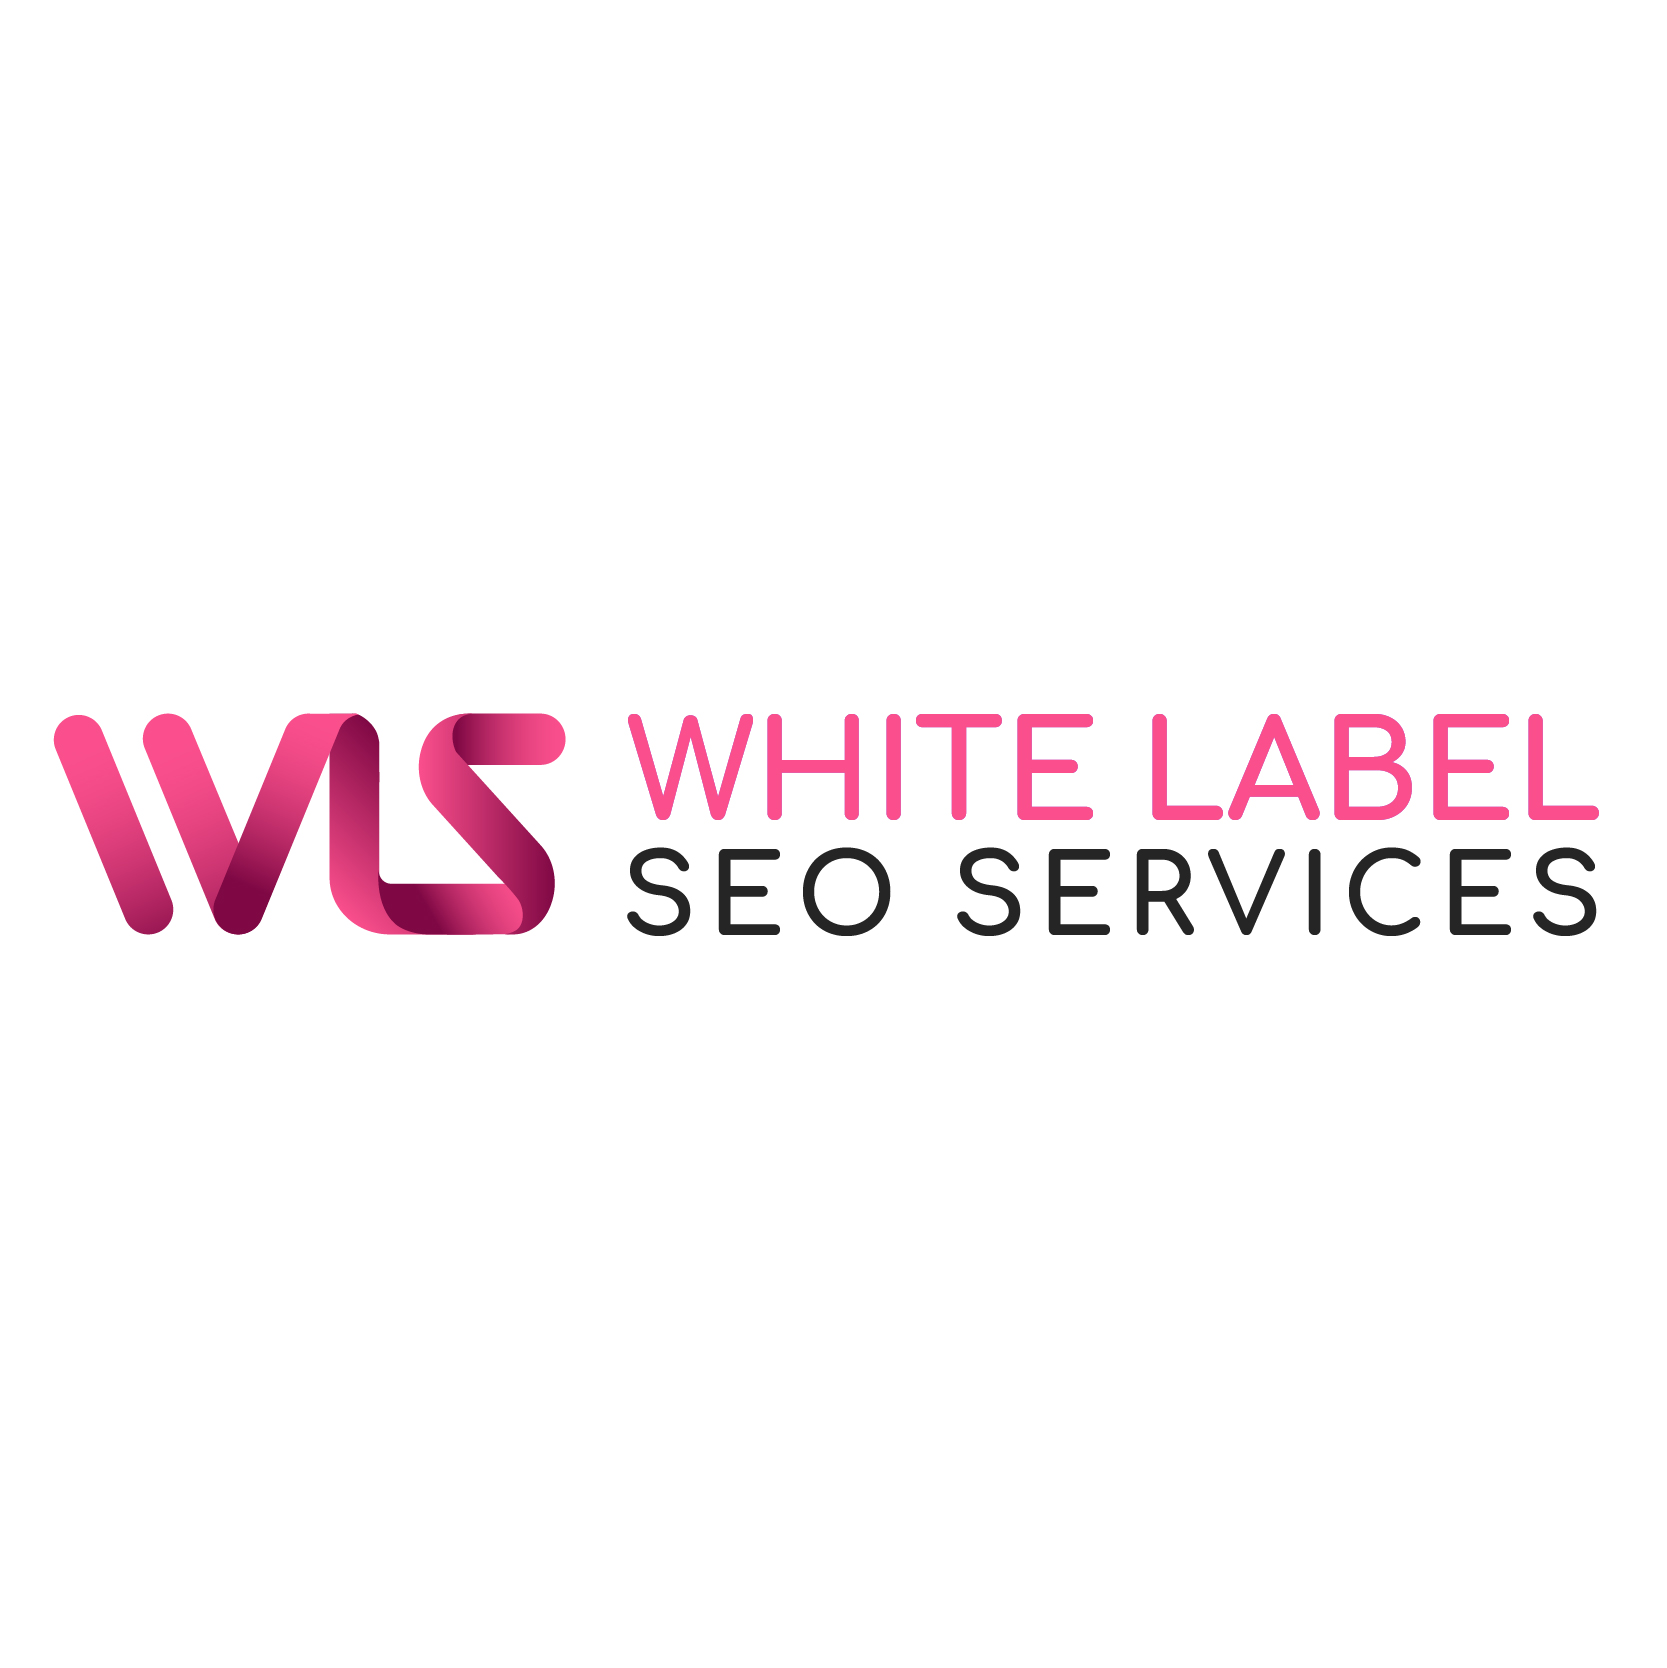 White Label SEO Services